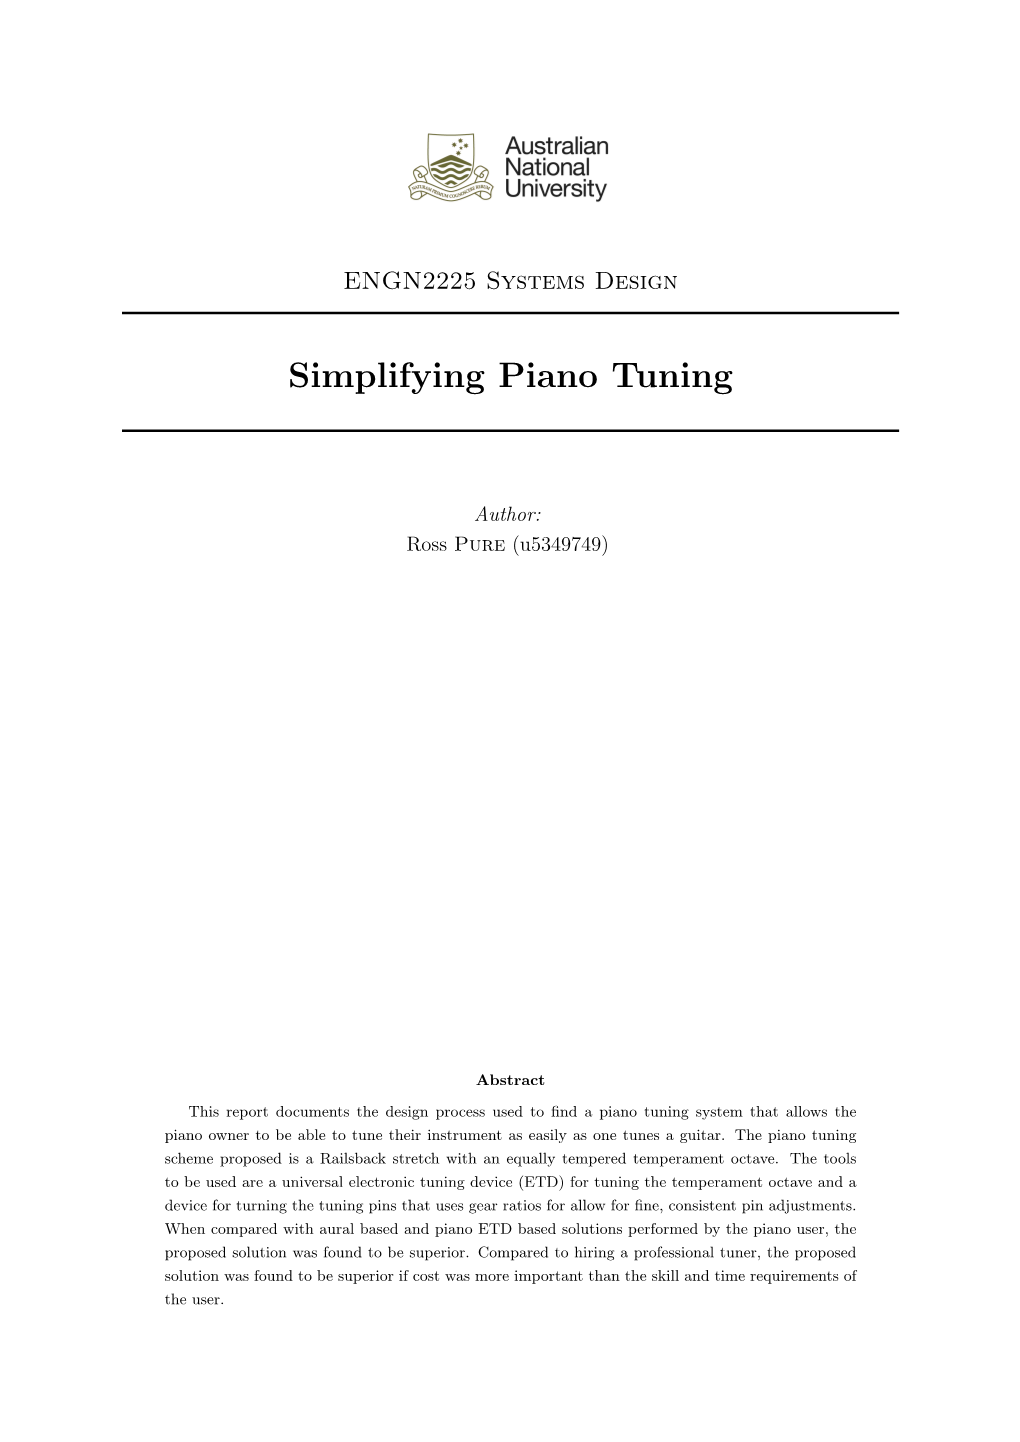 Simplifying Piano Tuning